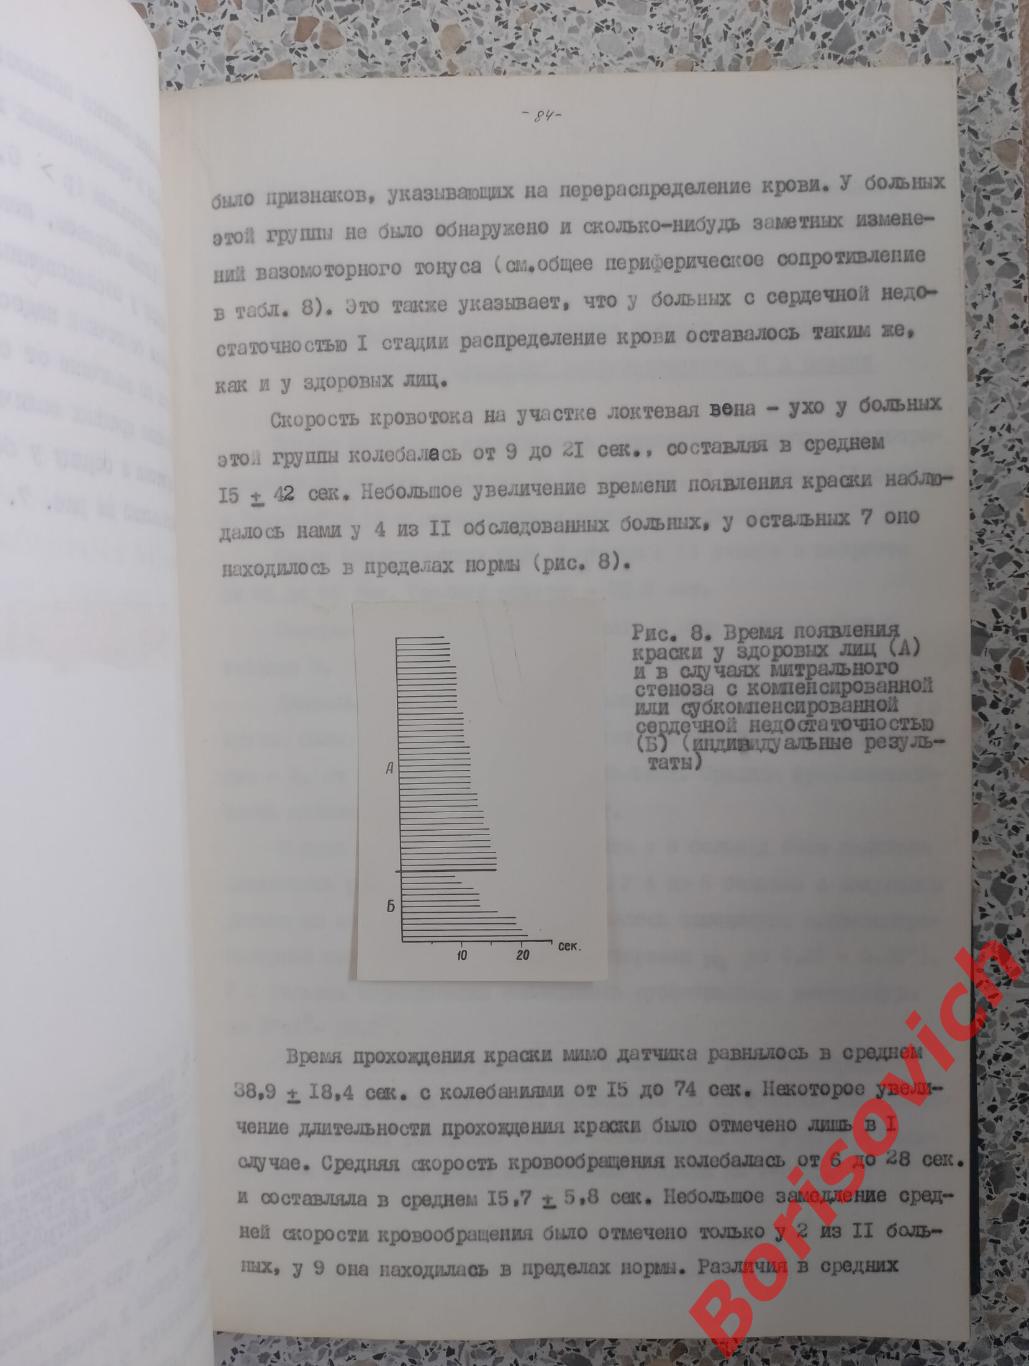 ДИССЕРТАЦИЯ НА СОИСКАНИЕ УЧЁНОЙ СТЕПЕНИ КАНДИДАТА МЕДИЦИНСКИХ НАУК 1965 г 4